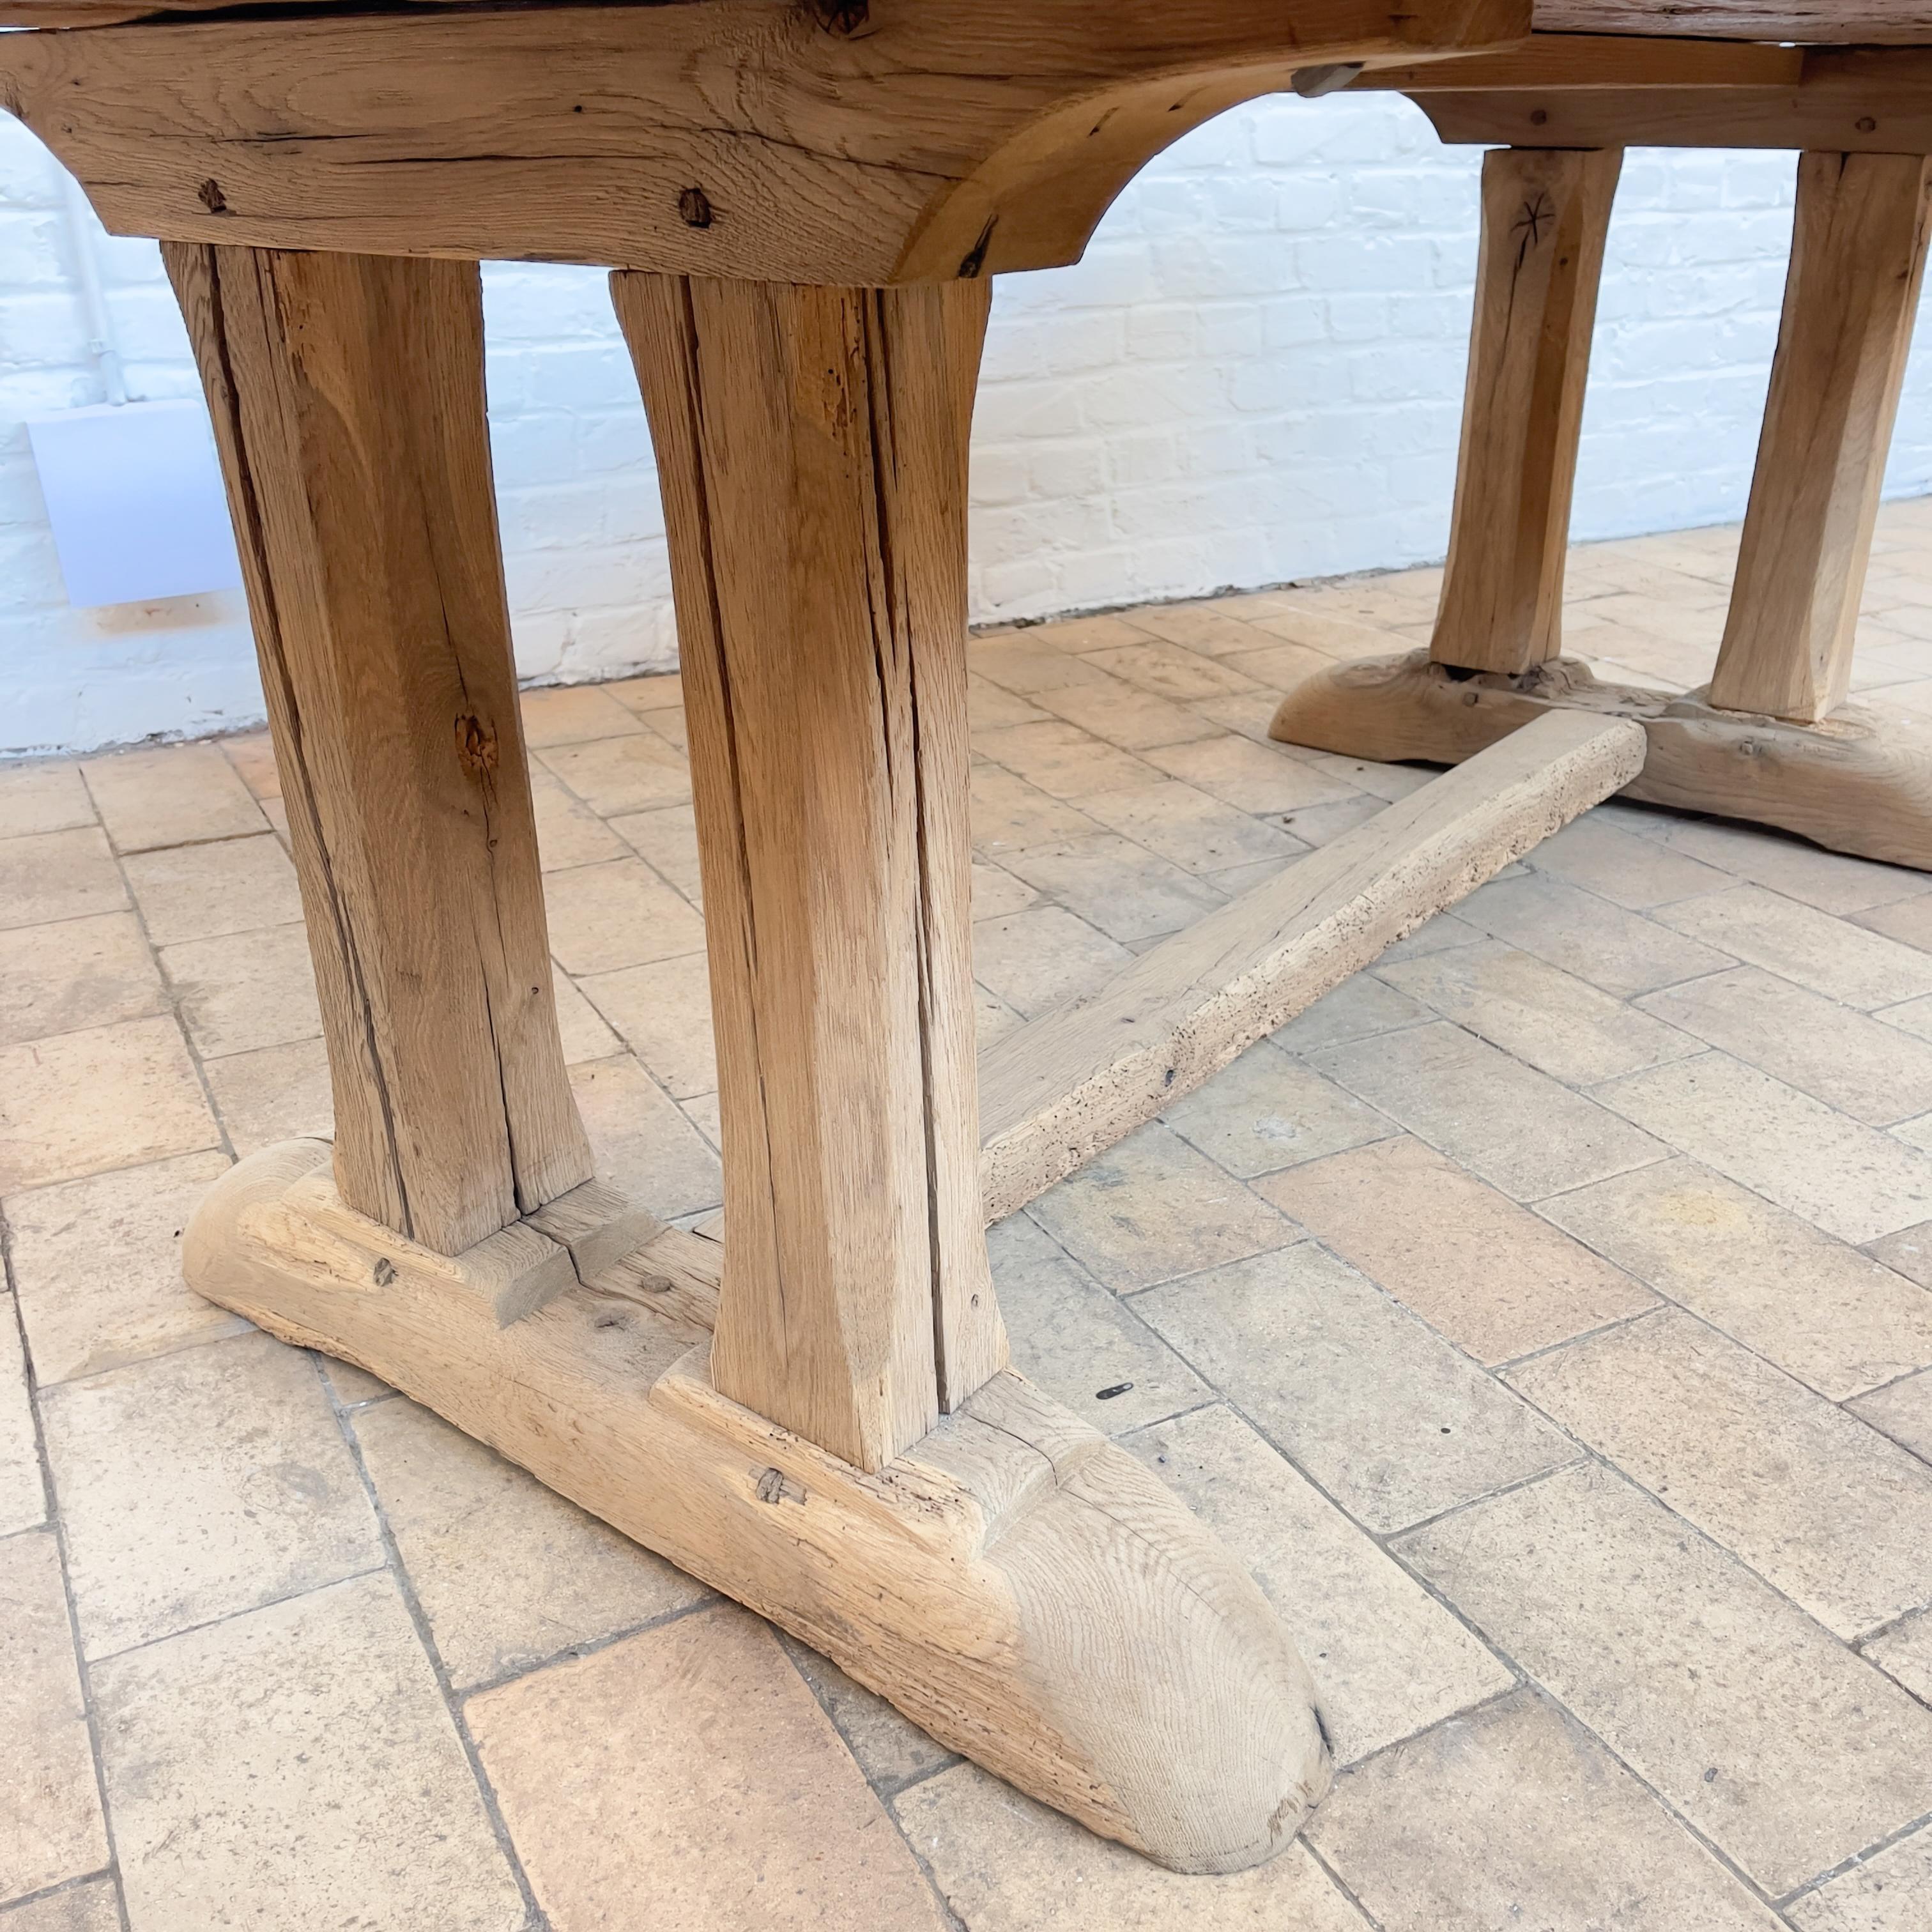 Oak monastery table
Fully restored
Raw oak.